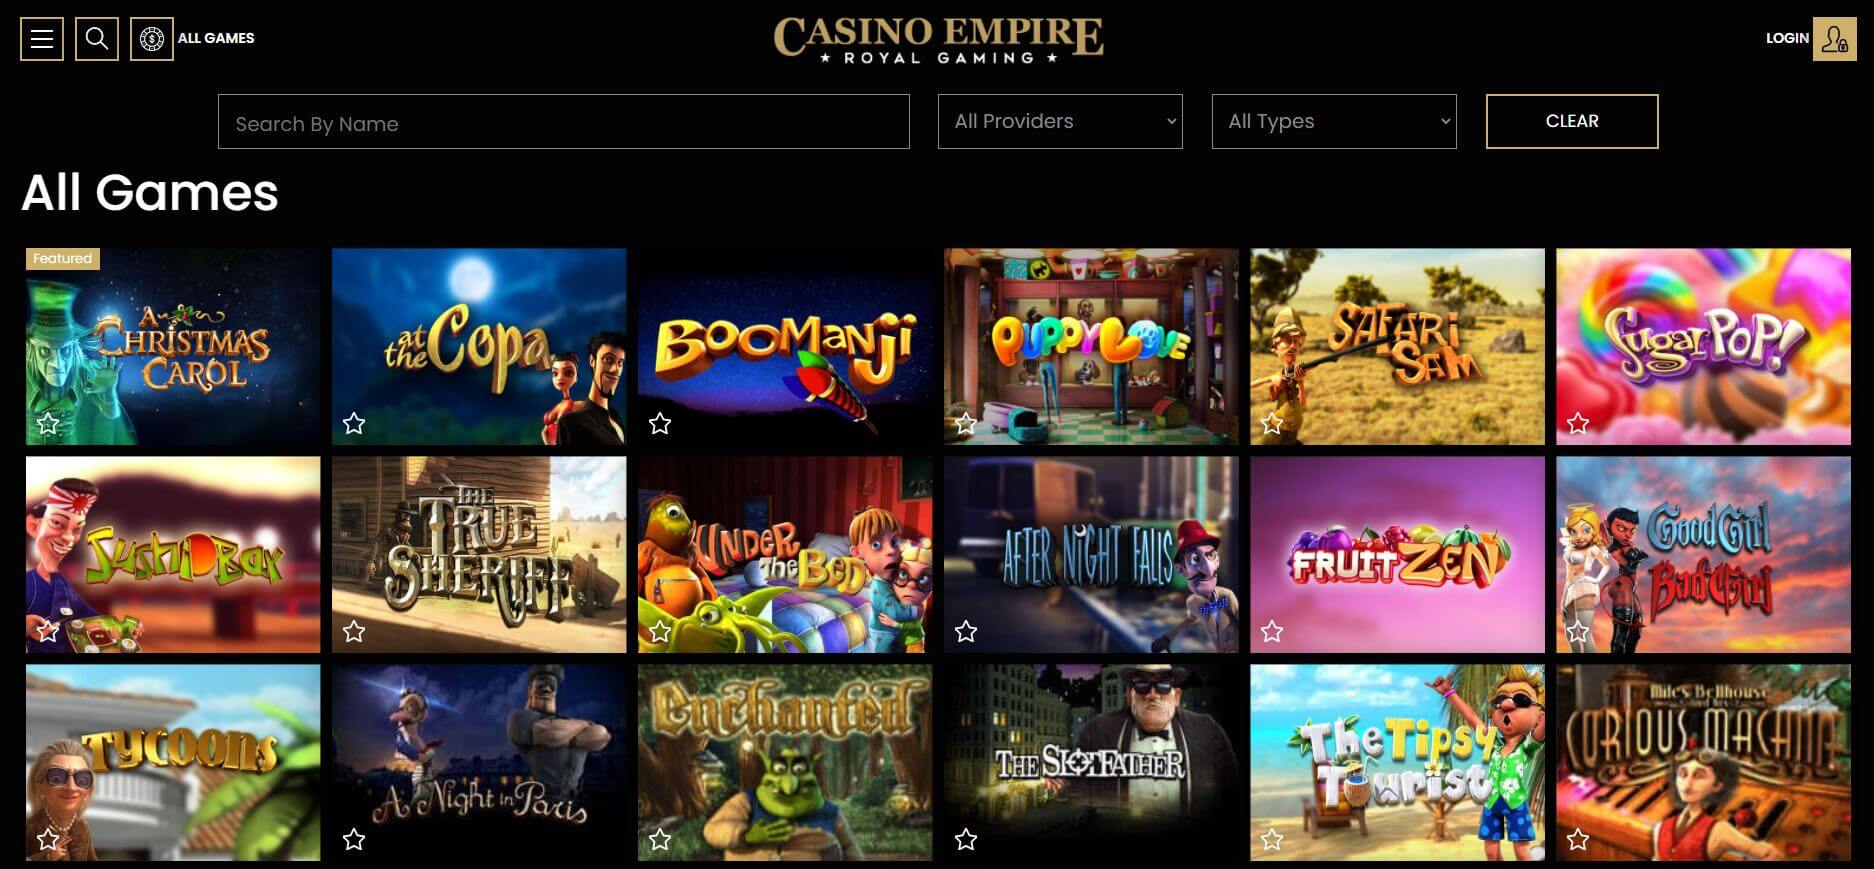 Casino Empire Games